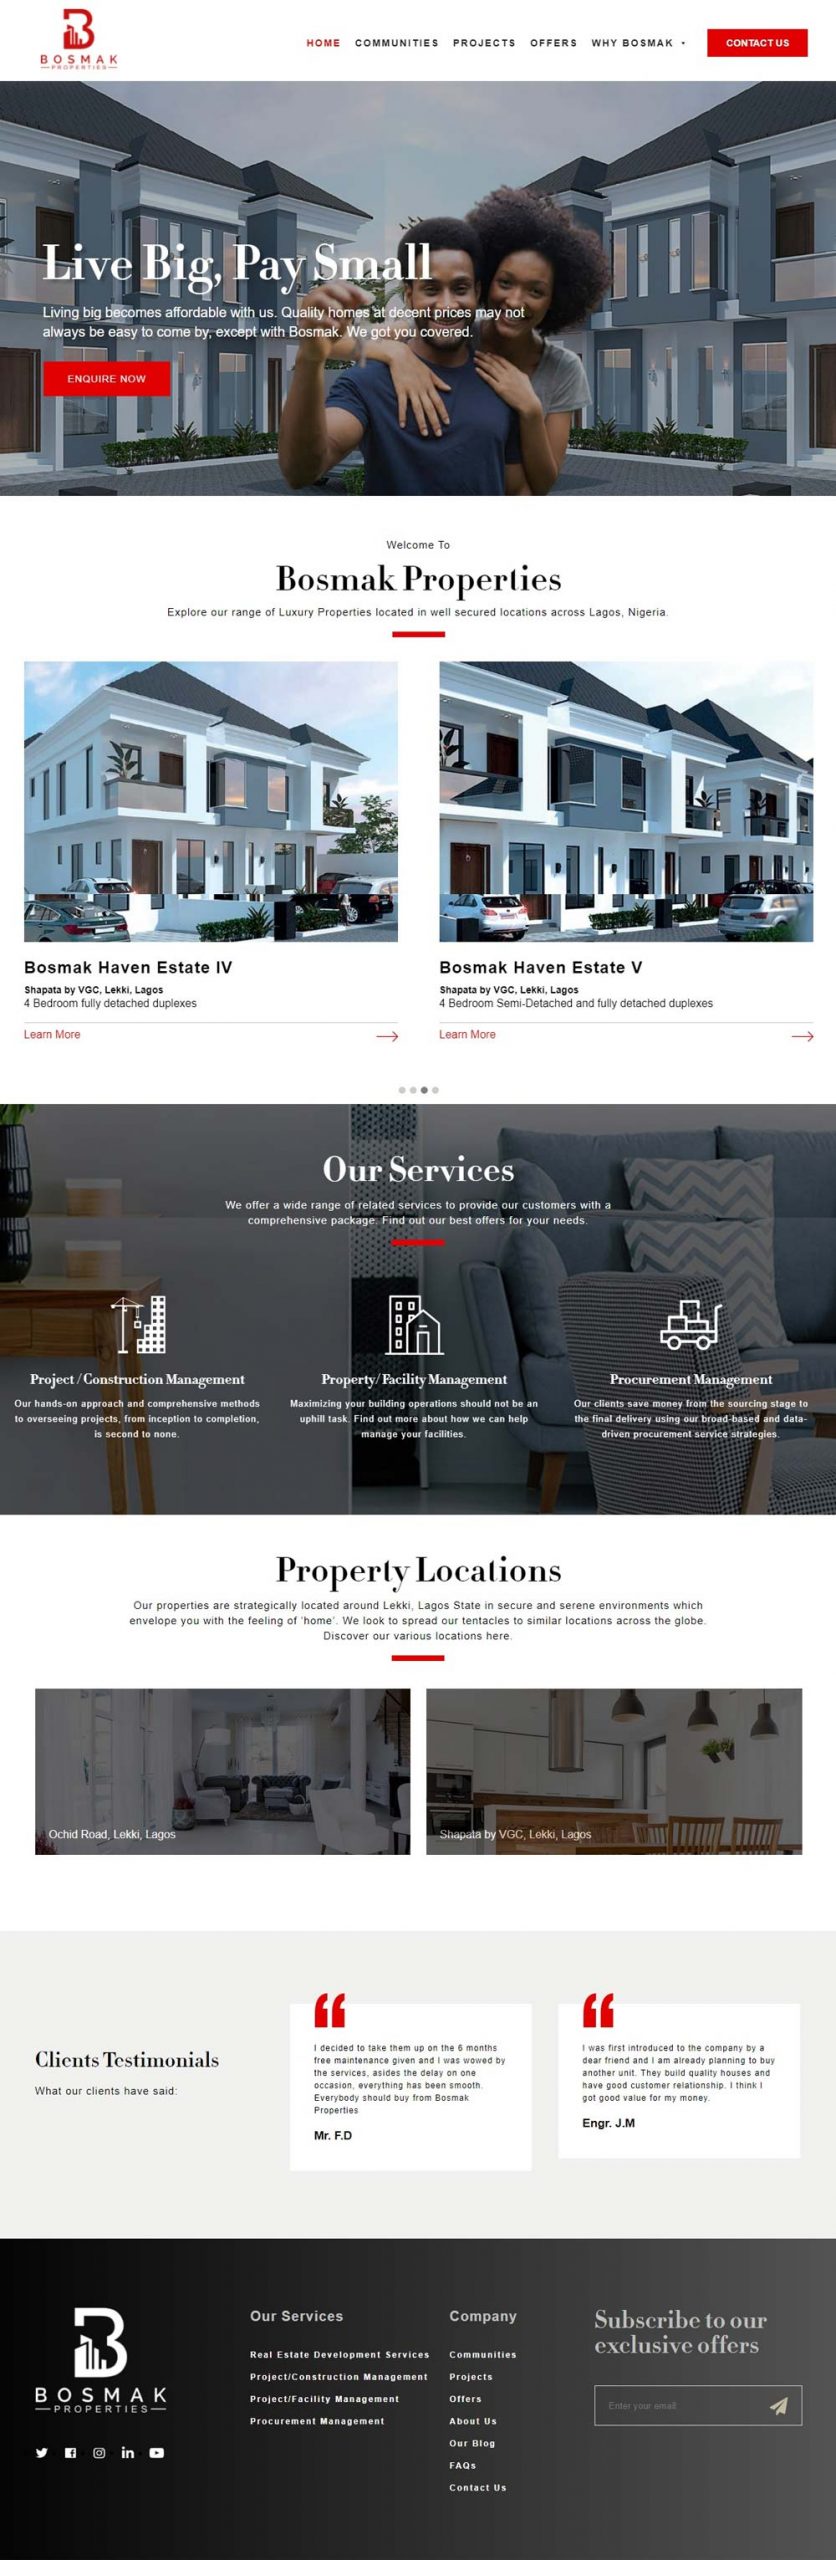 bosmak properties real estate website design by dientweb